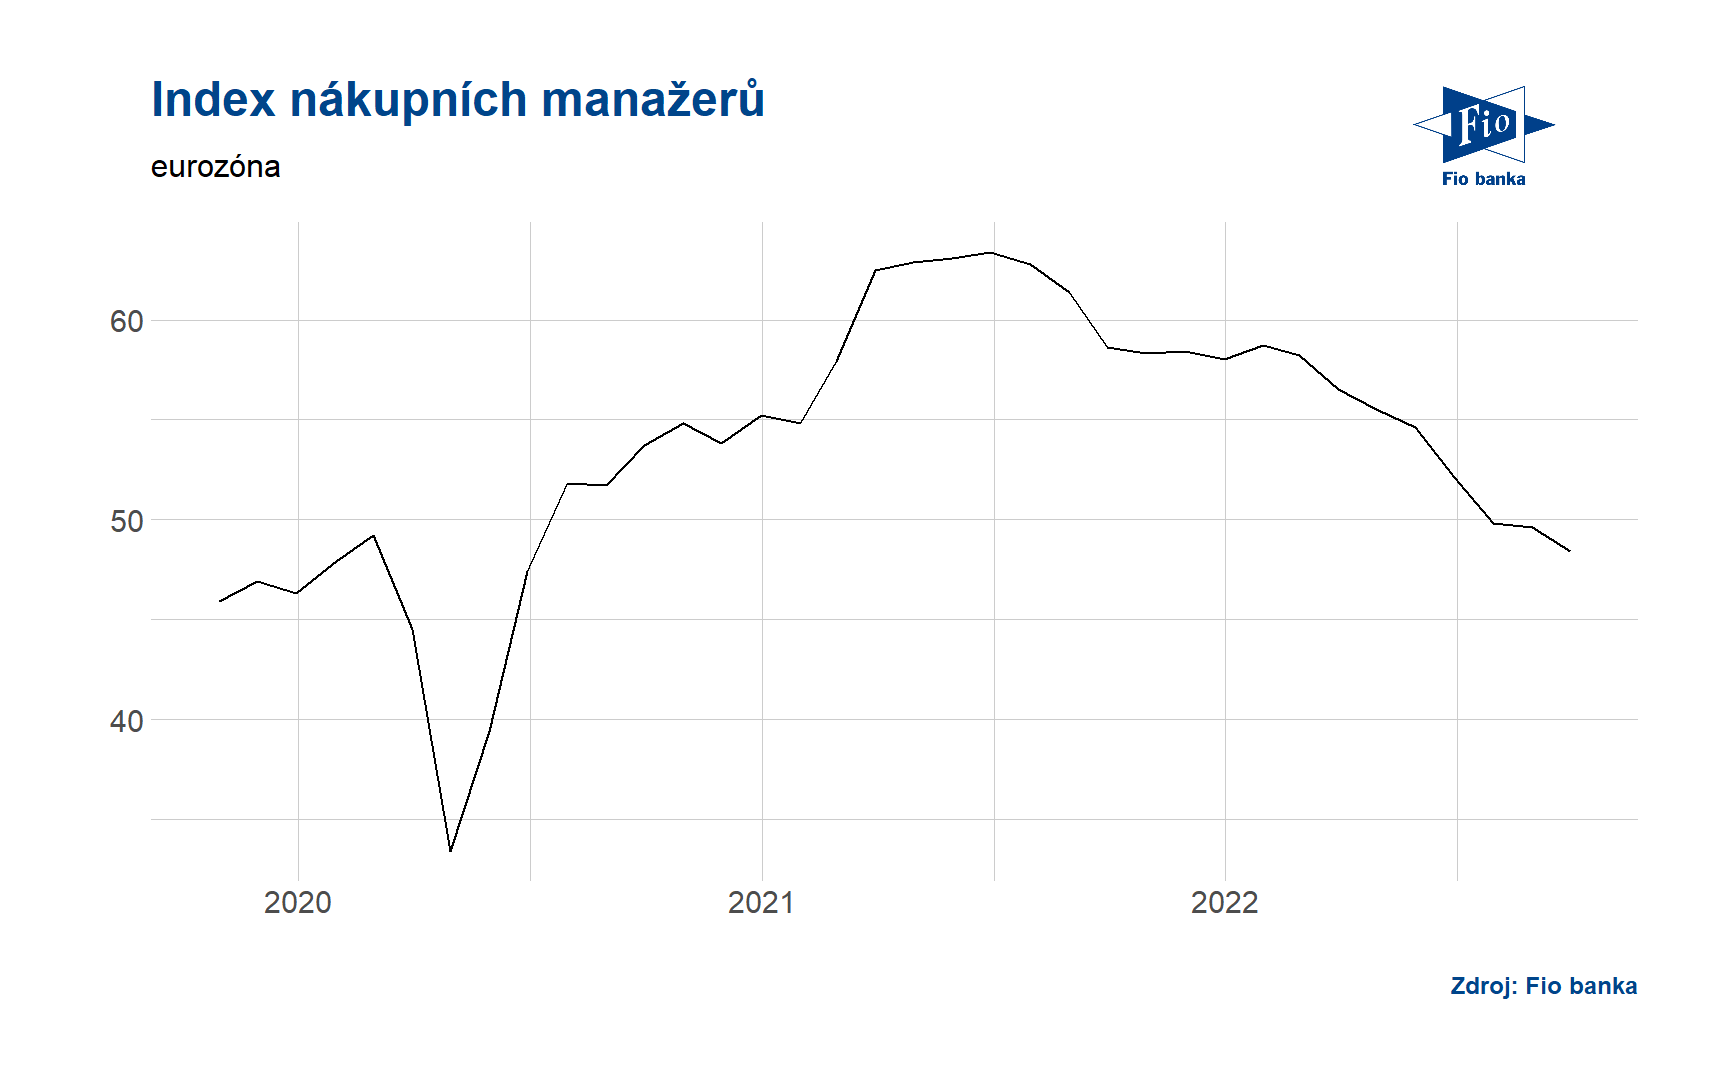 Index výrobních manažerů - eurozóna